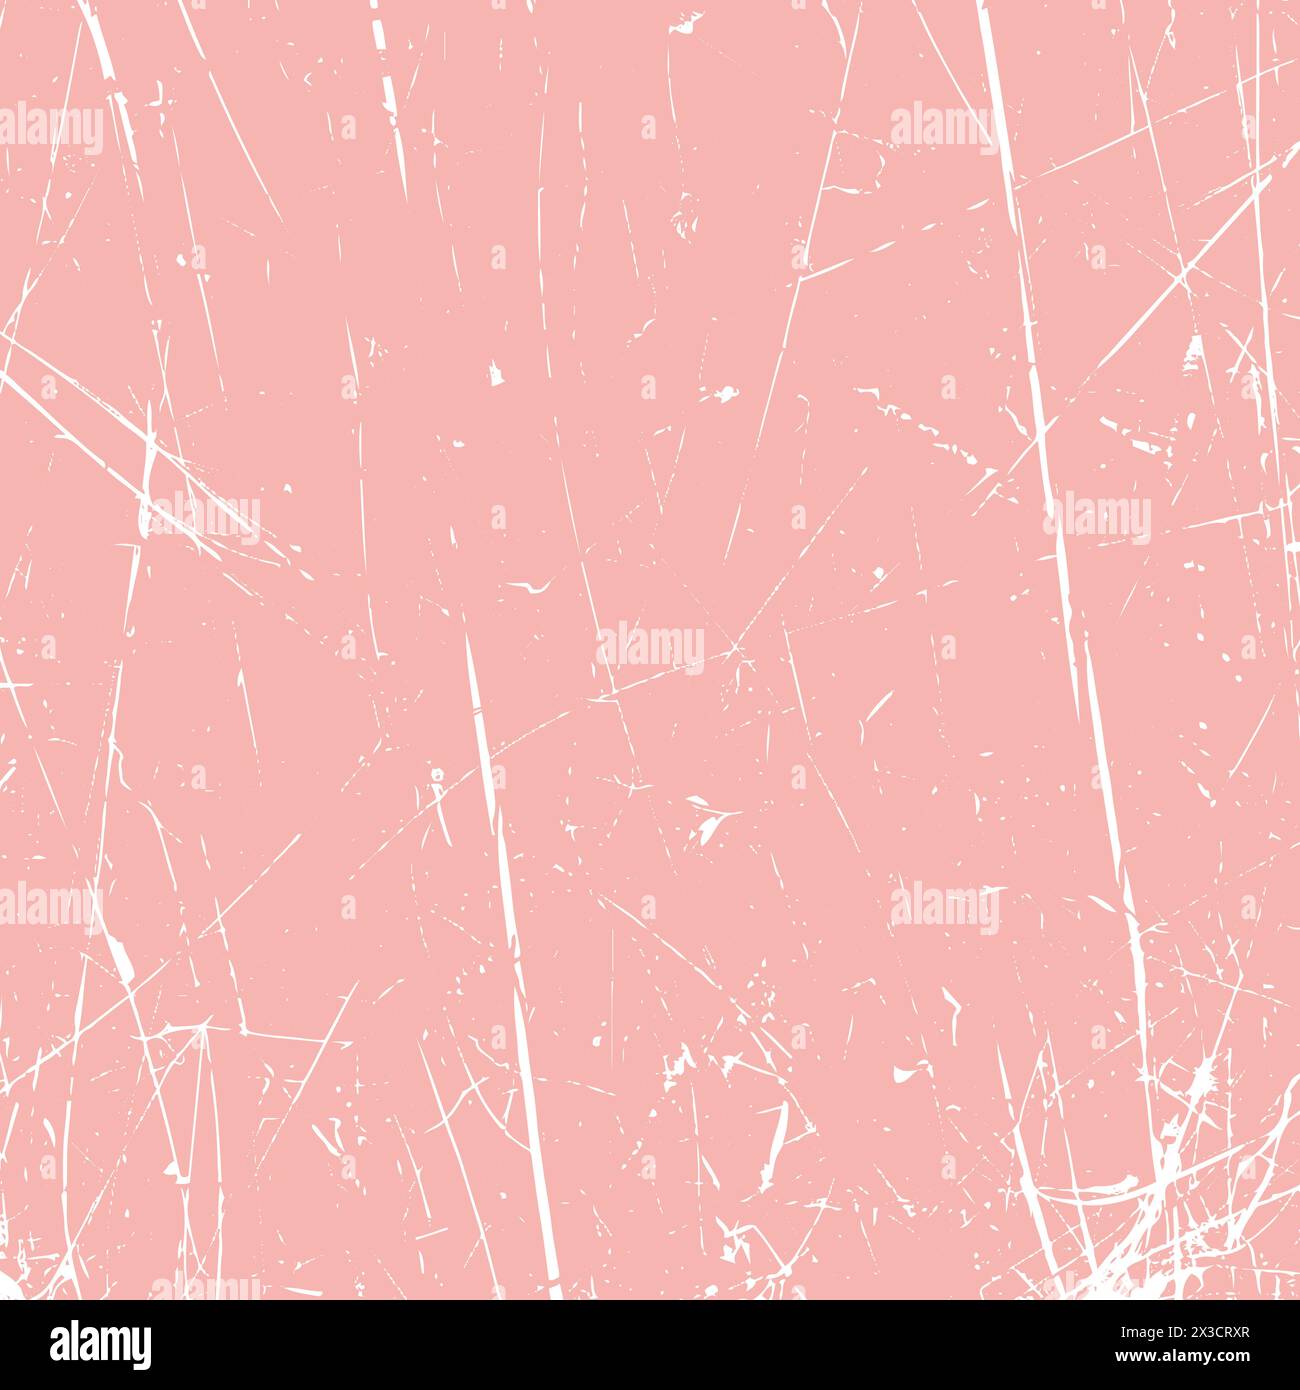 Fond de texture grunge grattée abstraite grunge gratté rose pastel Illustration de Vecteur